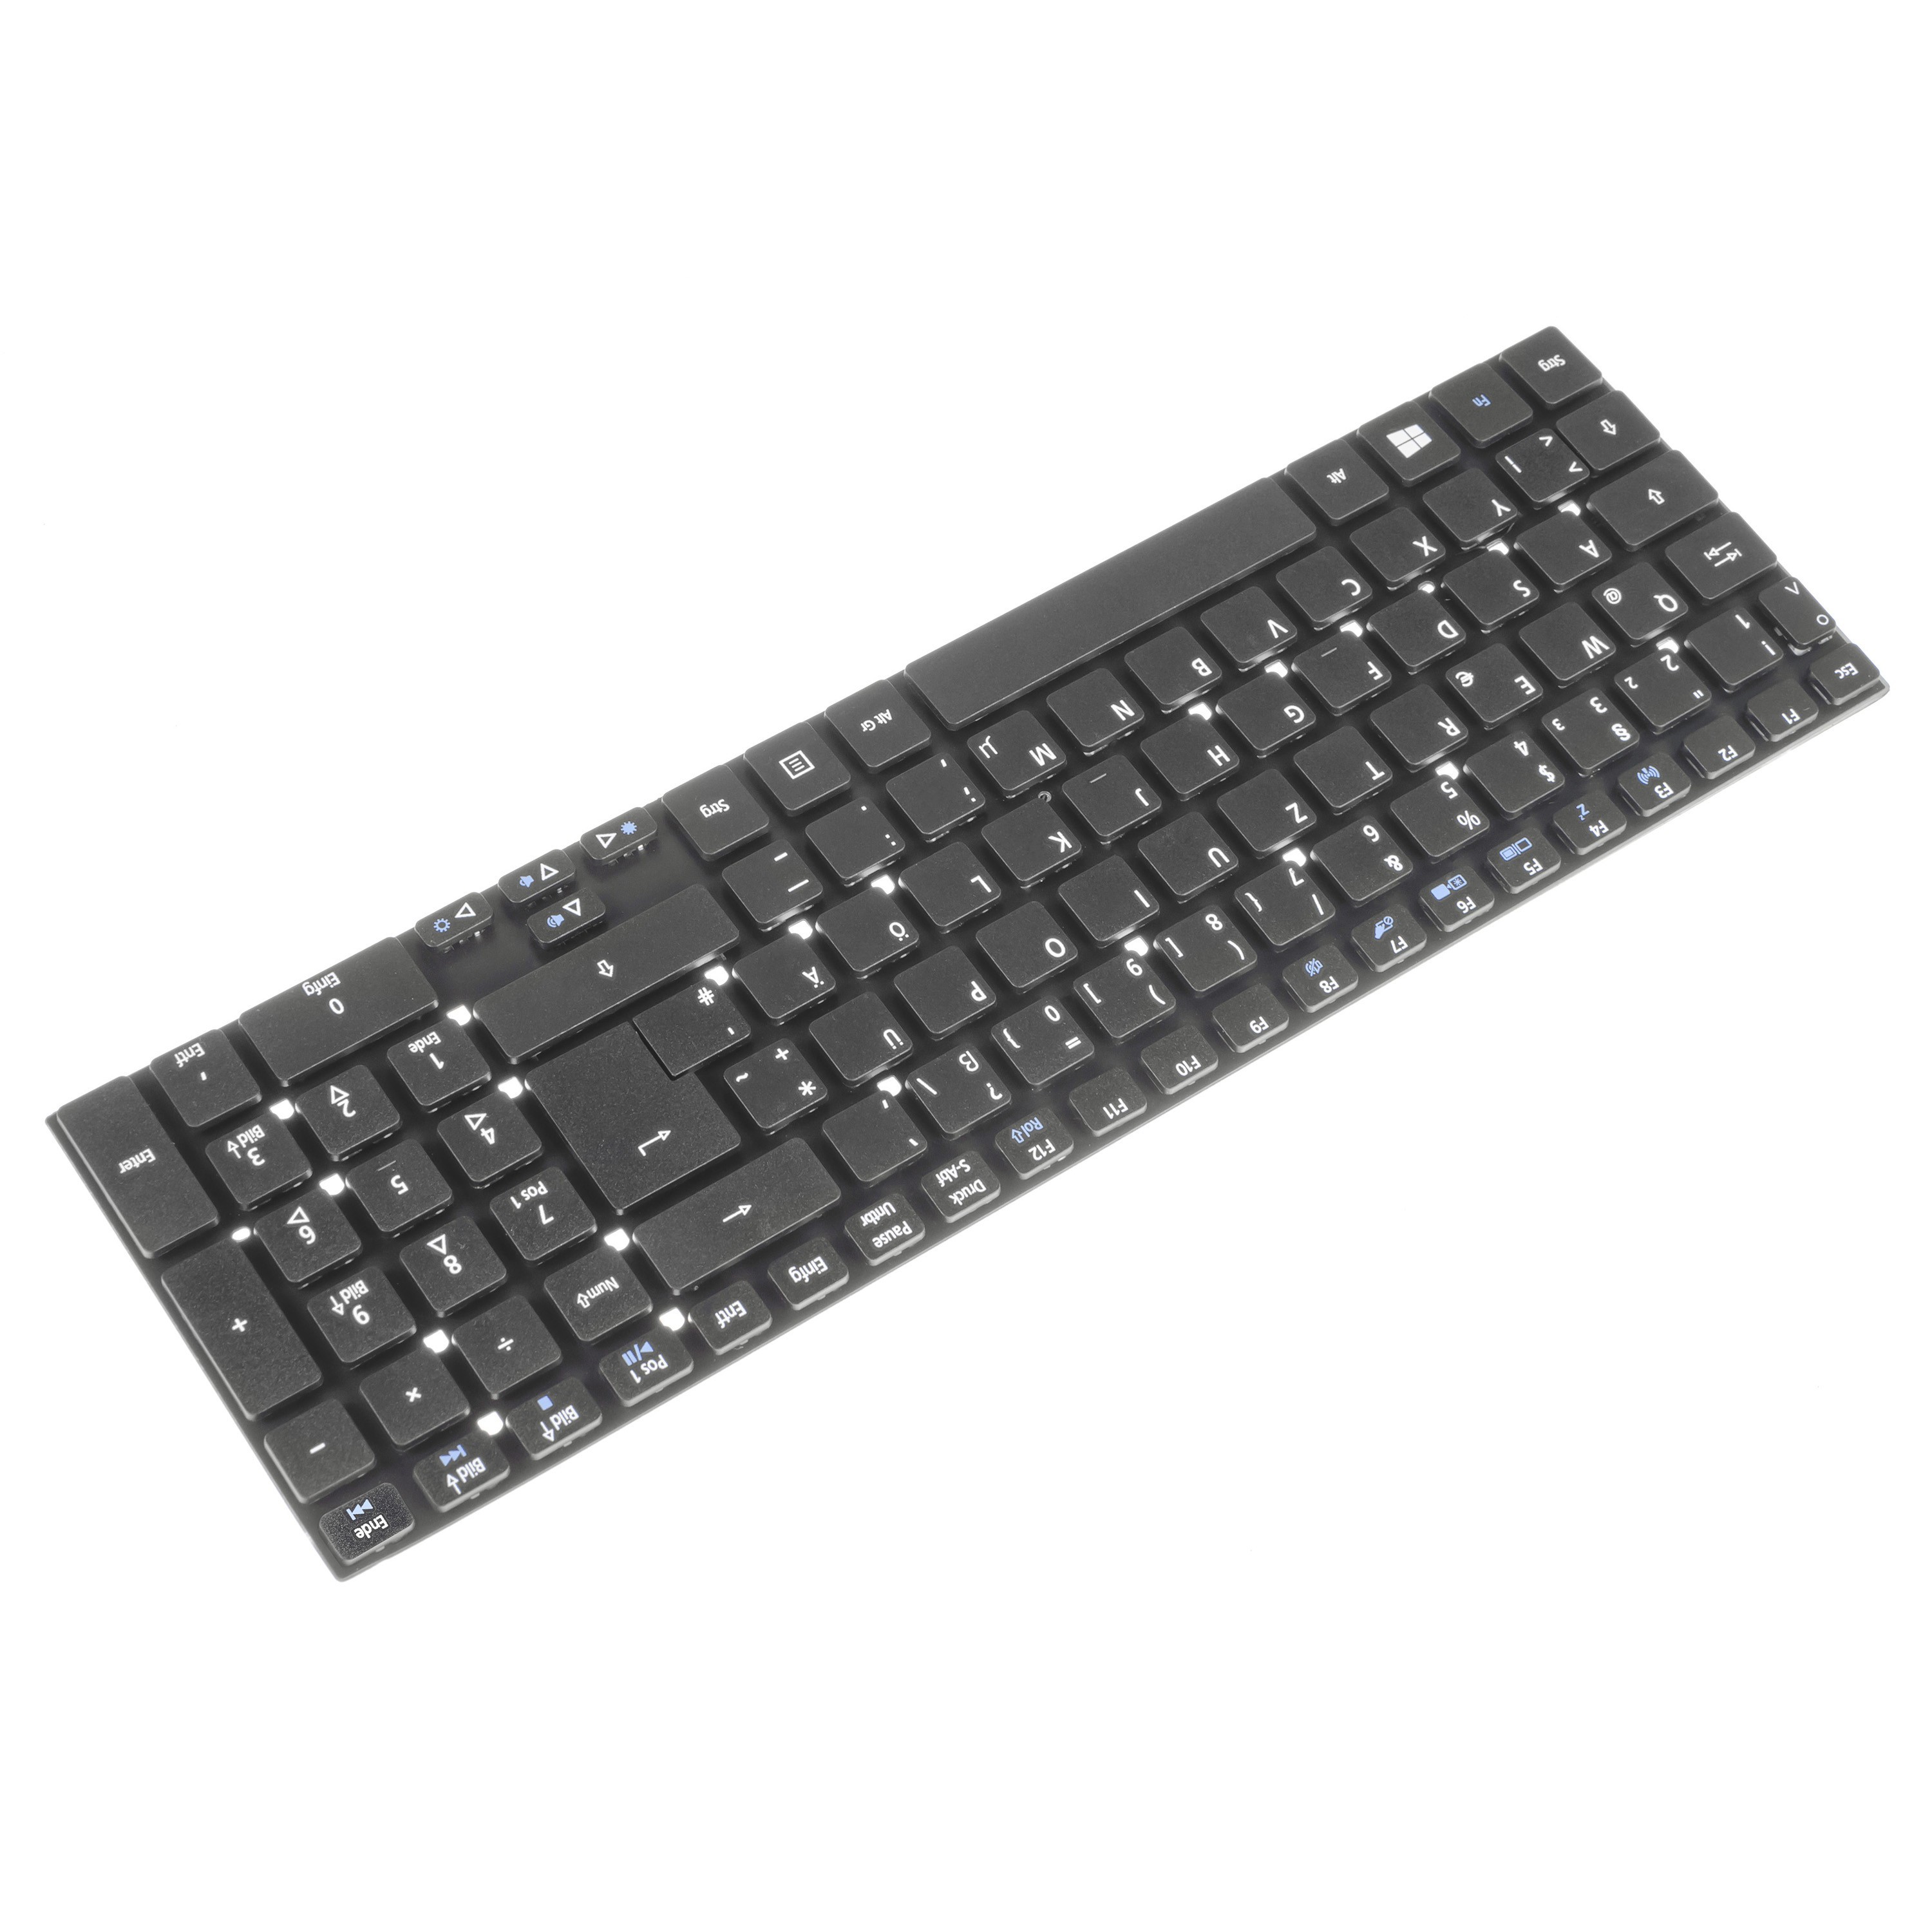 Green Cell Keyboard for Laptop Acer Aspire 5342 5755G E5-511 V3, Extensa 2508 2509 2510